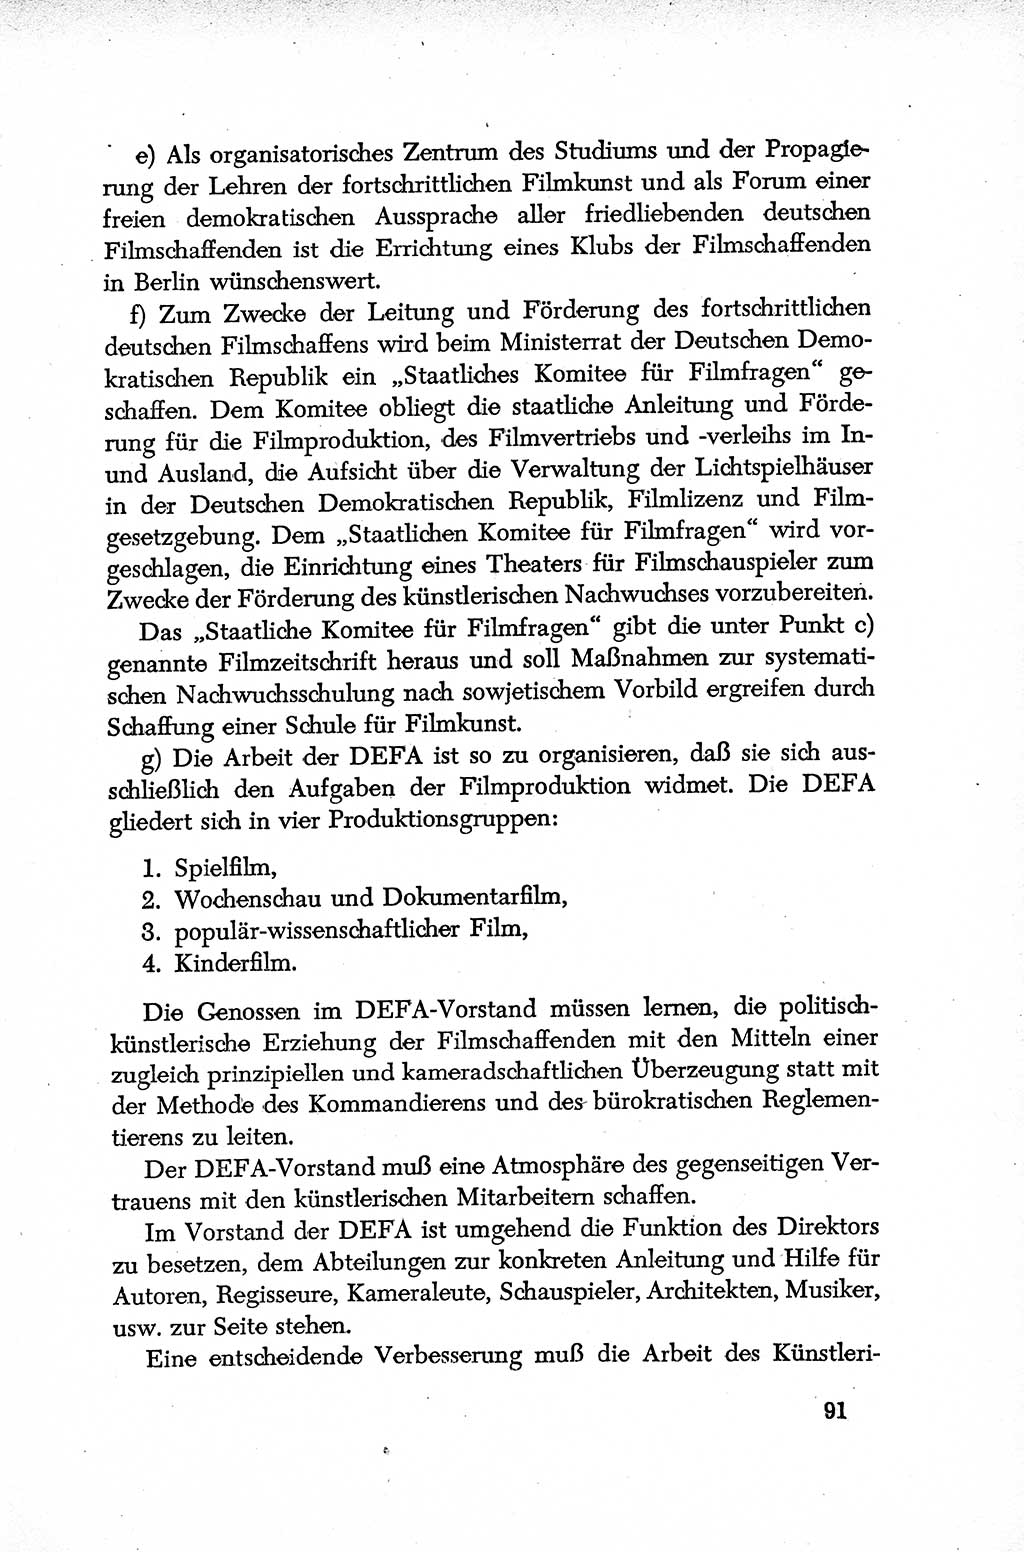 Dokumente der Sozialistischen Einheitspartei Deutschlands (SED) [Deutsche Demokratische Republik (DDR)] 1952-1953, Seite 91 (Dok. SED DDR 1952-1953, S. 91)